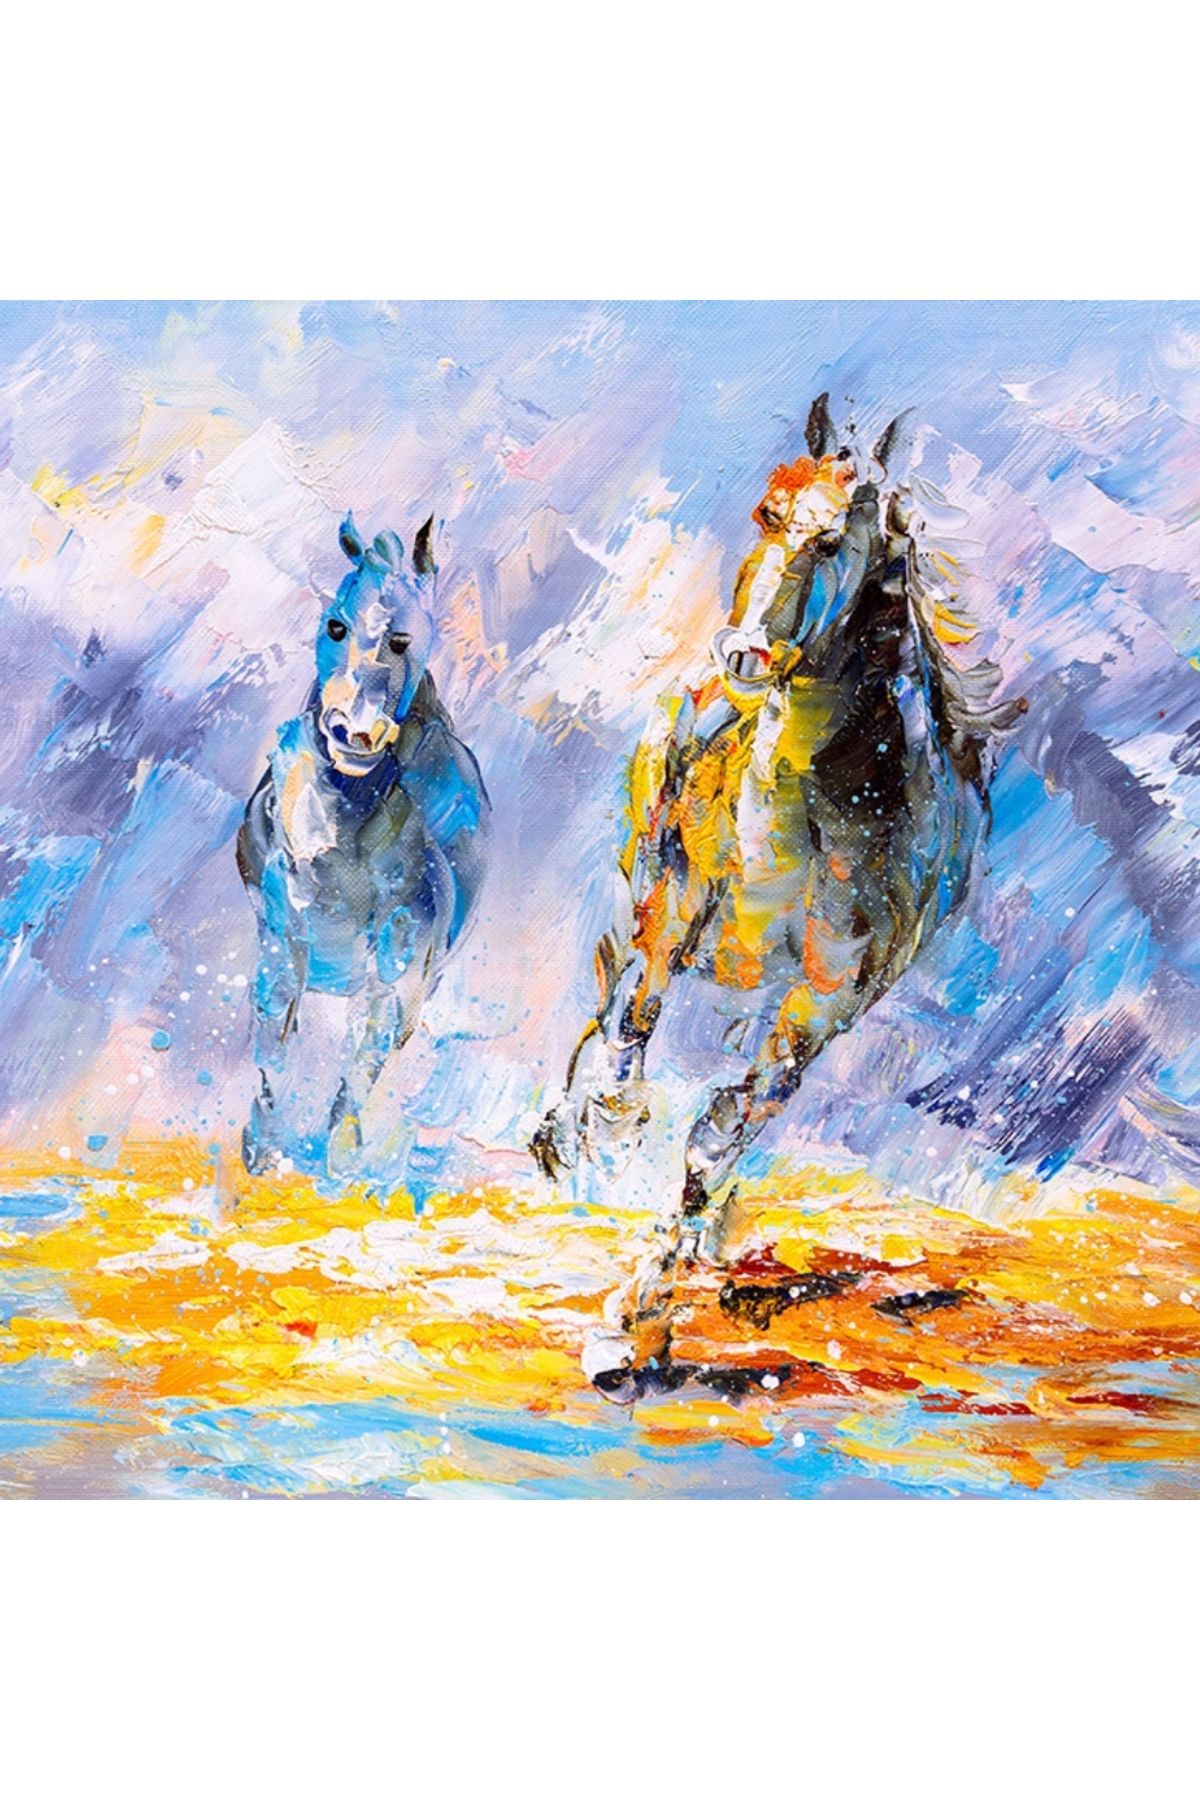 Karkissa Dörtnala İki At Sarı ve Mavi Tonlarda Yağlıboya Kanvas Tablo 50 x 70